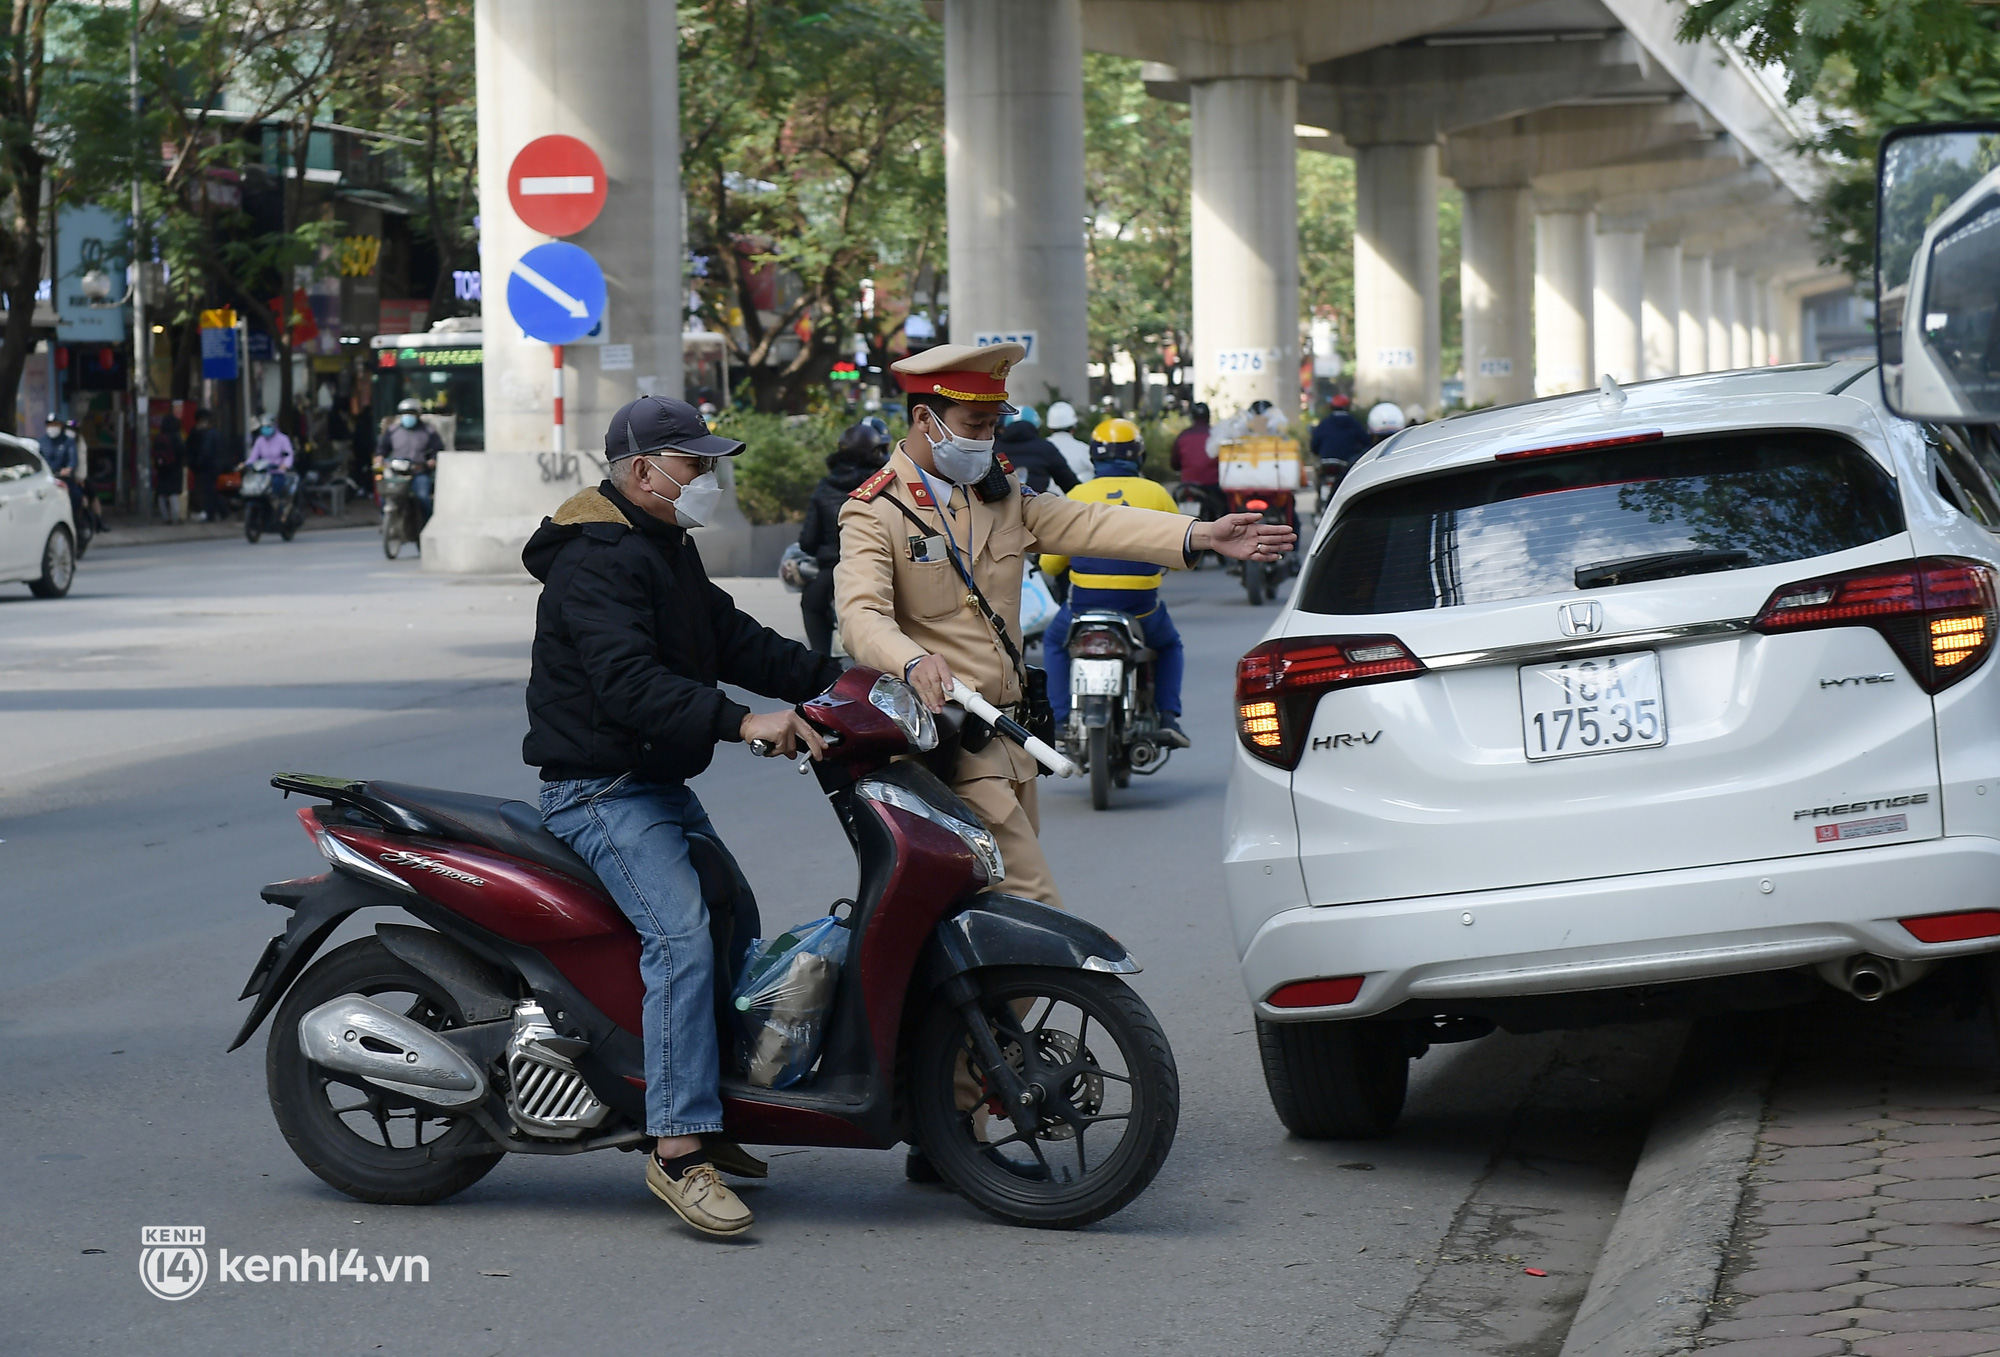 Hà Nội: Người đi xe máy ngỡ ngàng vì không đội mũ bảo hiểm bị xử phạt gấp đôi mức cũ - Ảnh 2.